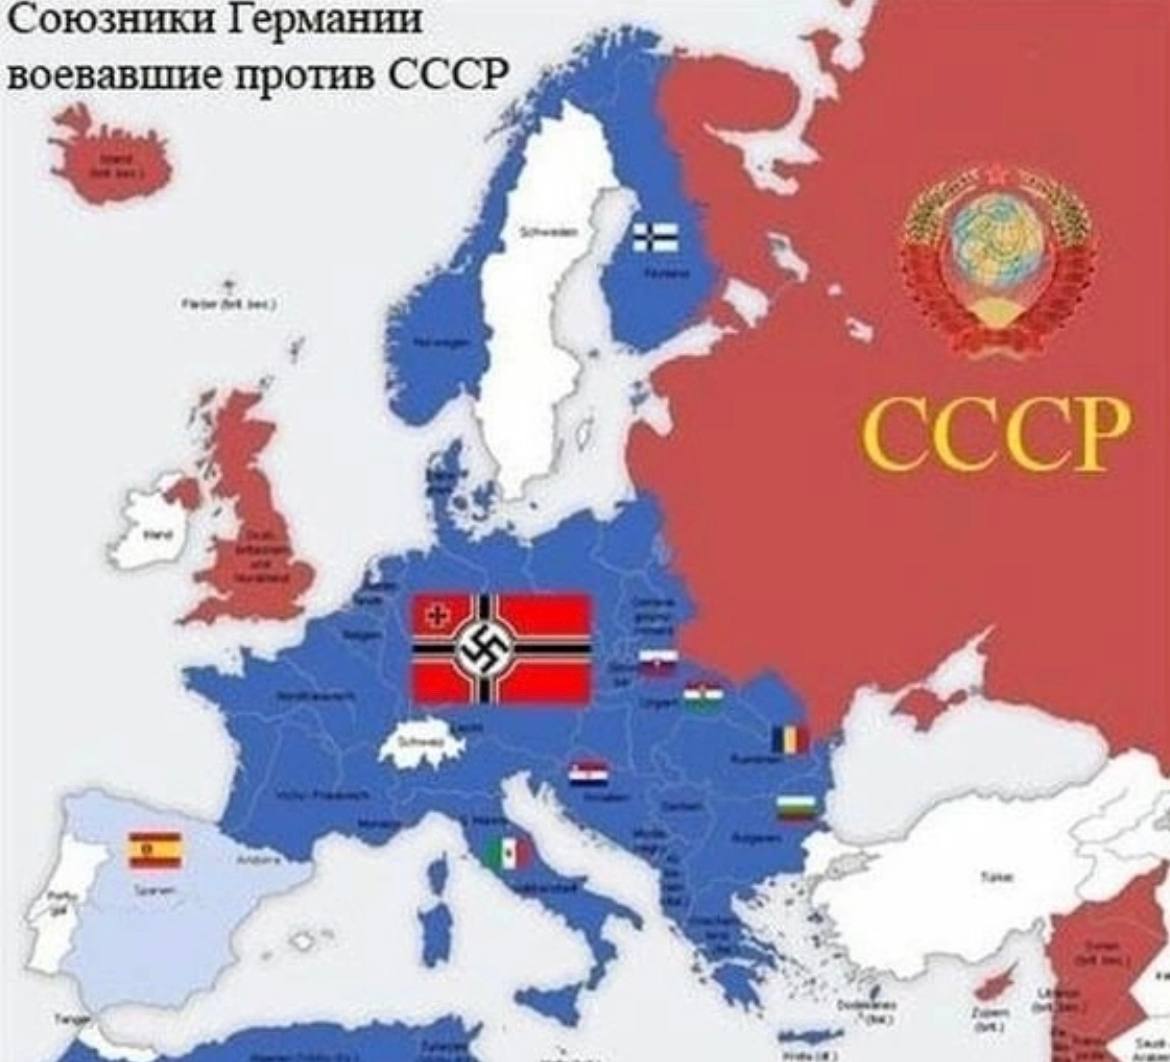 Какие государства были фашистскими. Союзники 2 мировой войны карта. Карта союзников Германии во второй мировой. Союзники Германии во 2 мировой карта. Союзники фашистской Германии во второй мировой карта.